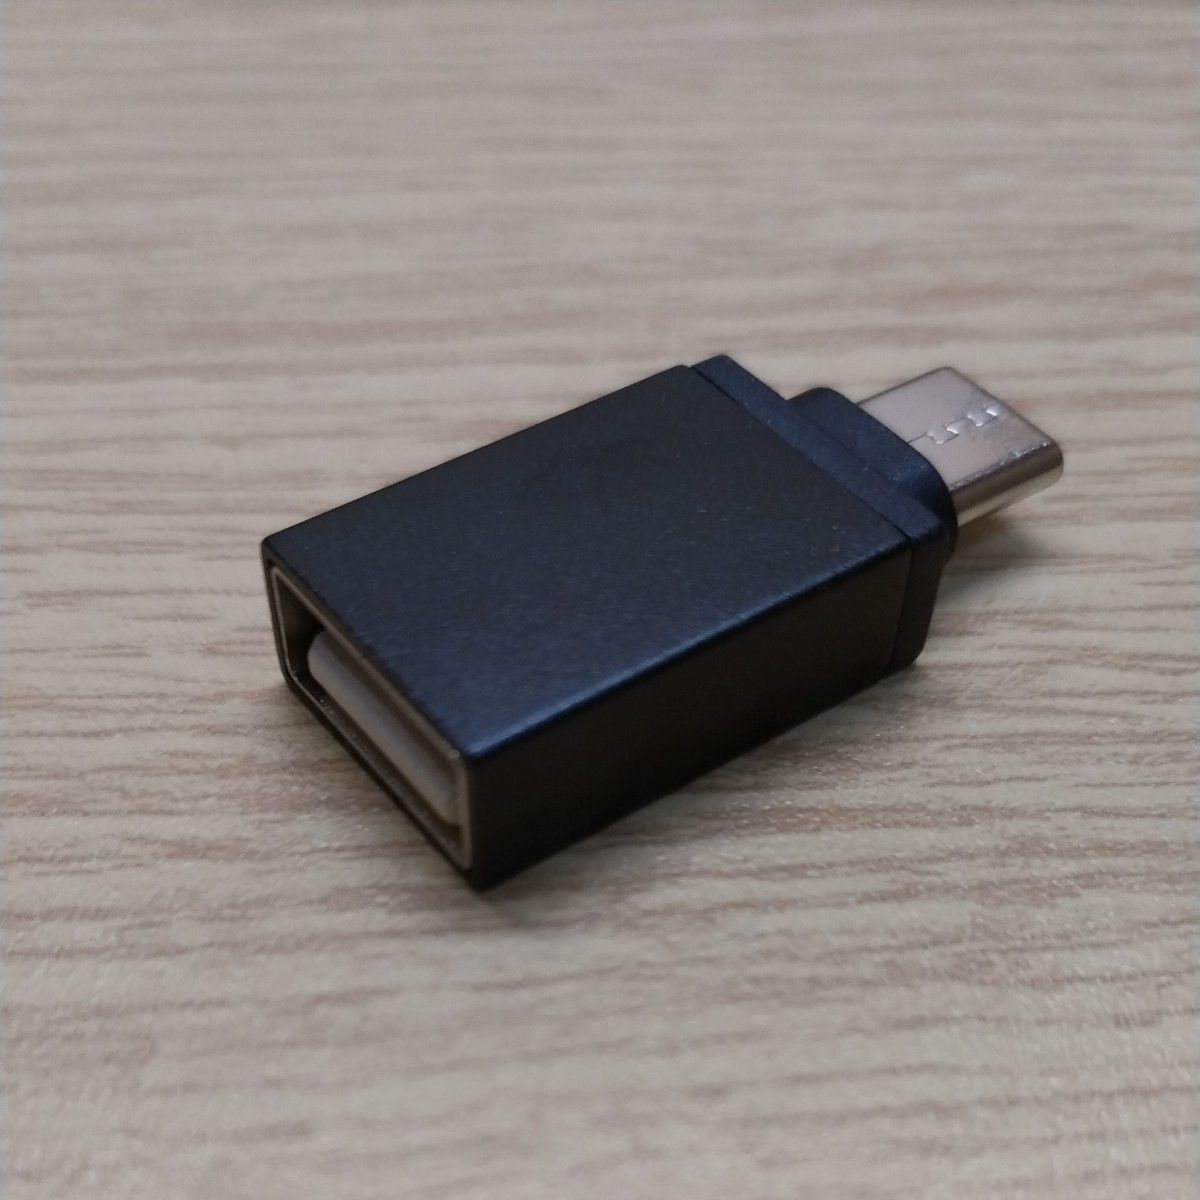 USB Type C (オス) to USB A  (メス) 変換アダプタ